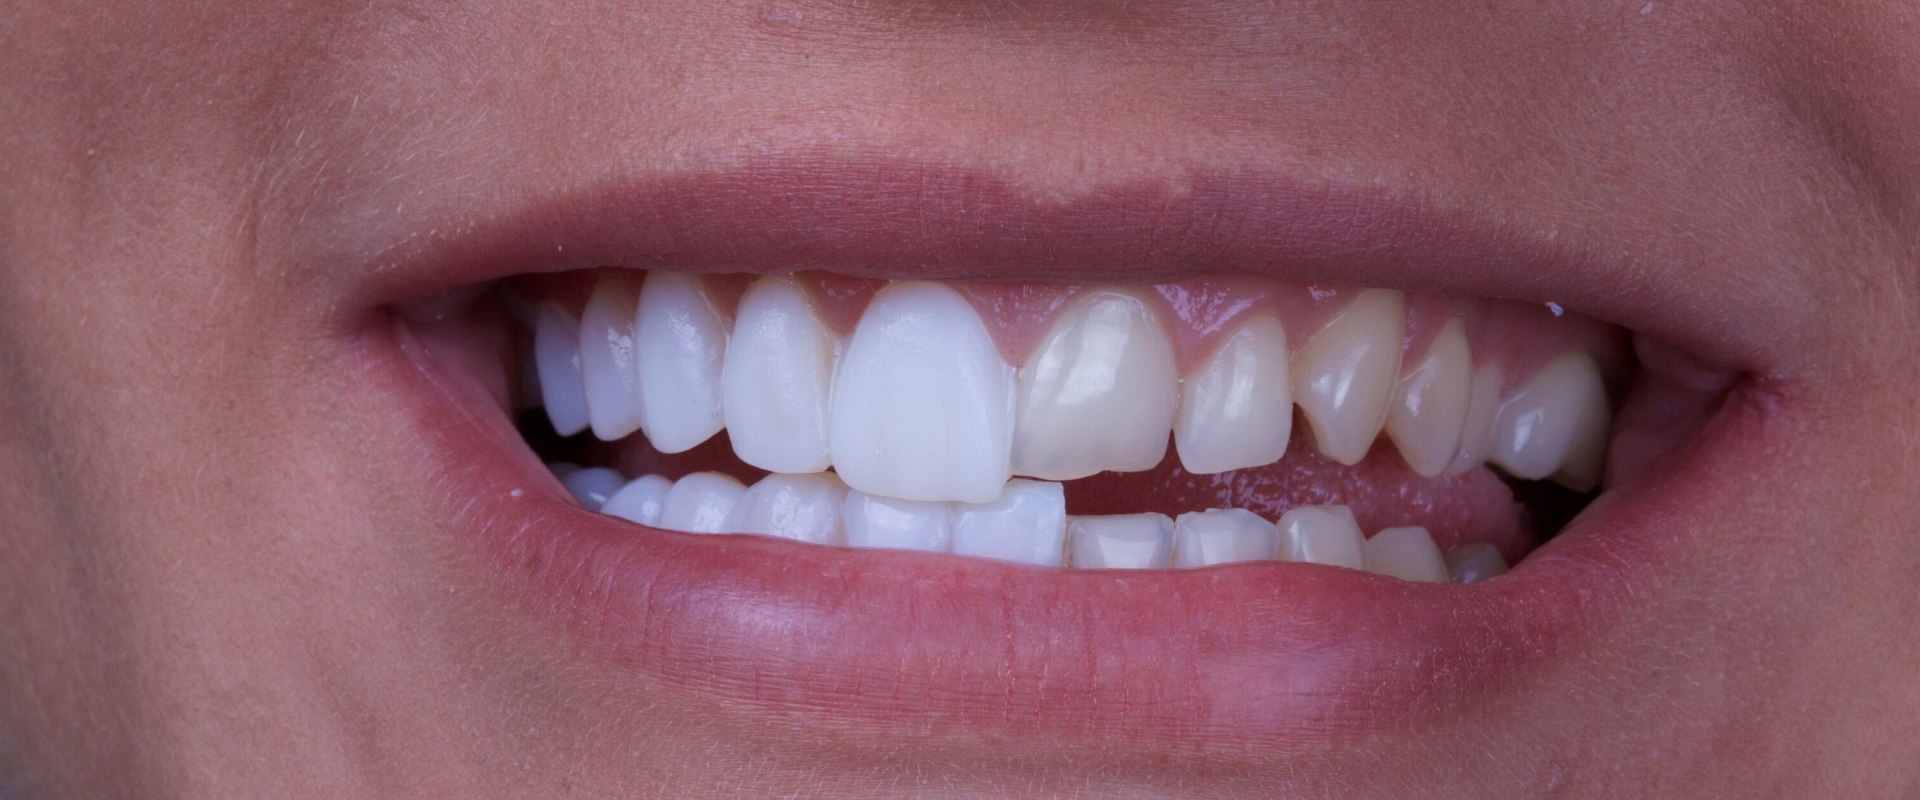 Why dental veneers?